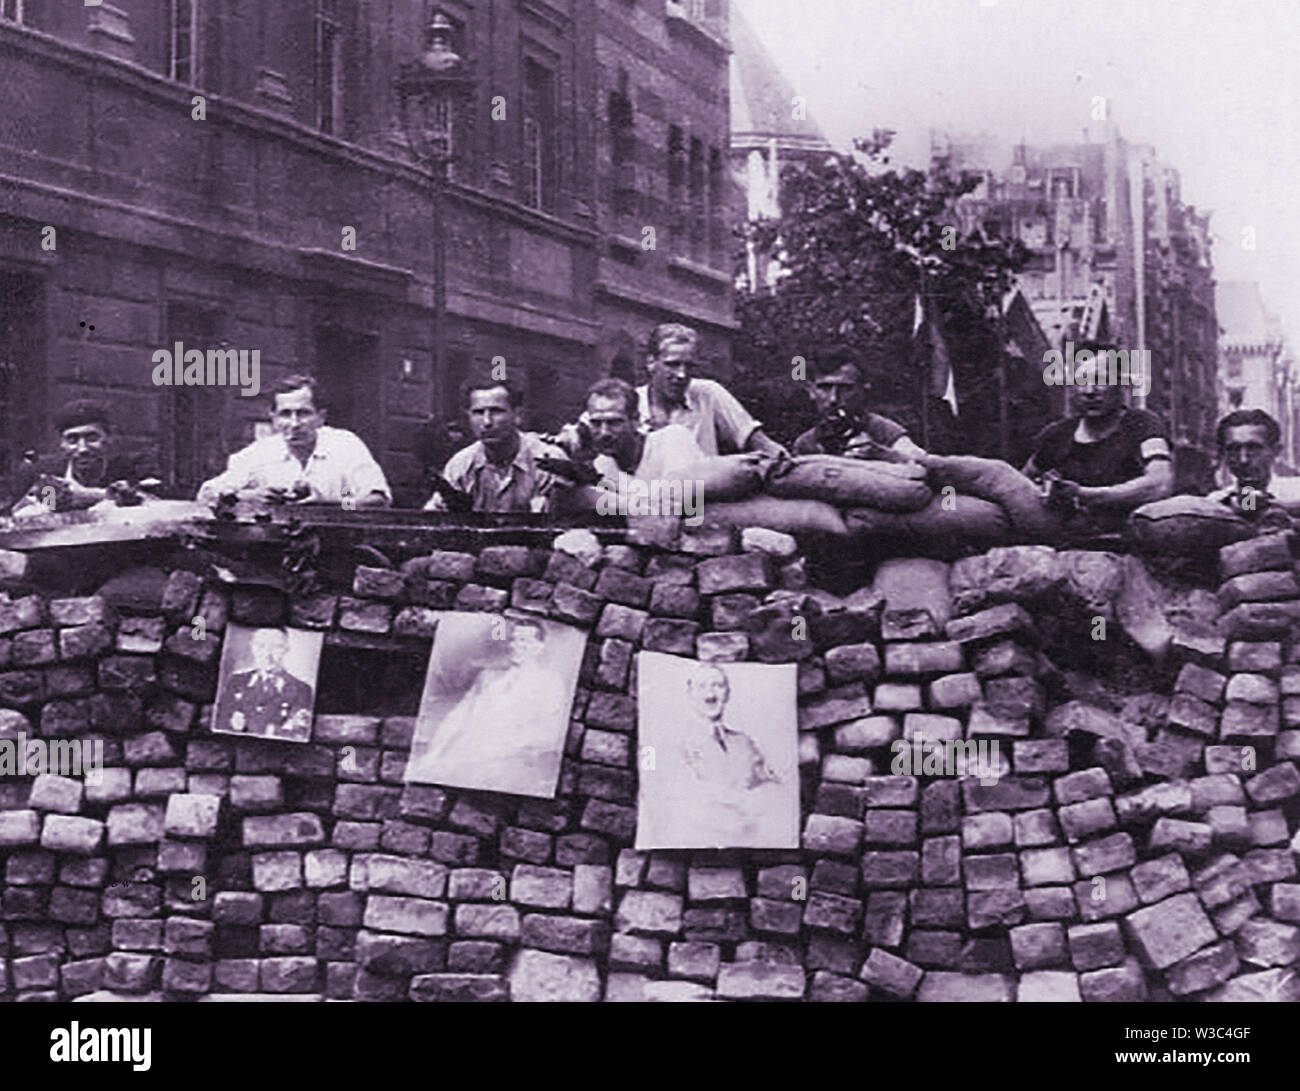 La DEUXIÈME GUERRE MONDIALE imprimer ancienne photo de membres de la résistance manning une barricade à Paris. Banque D'Images